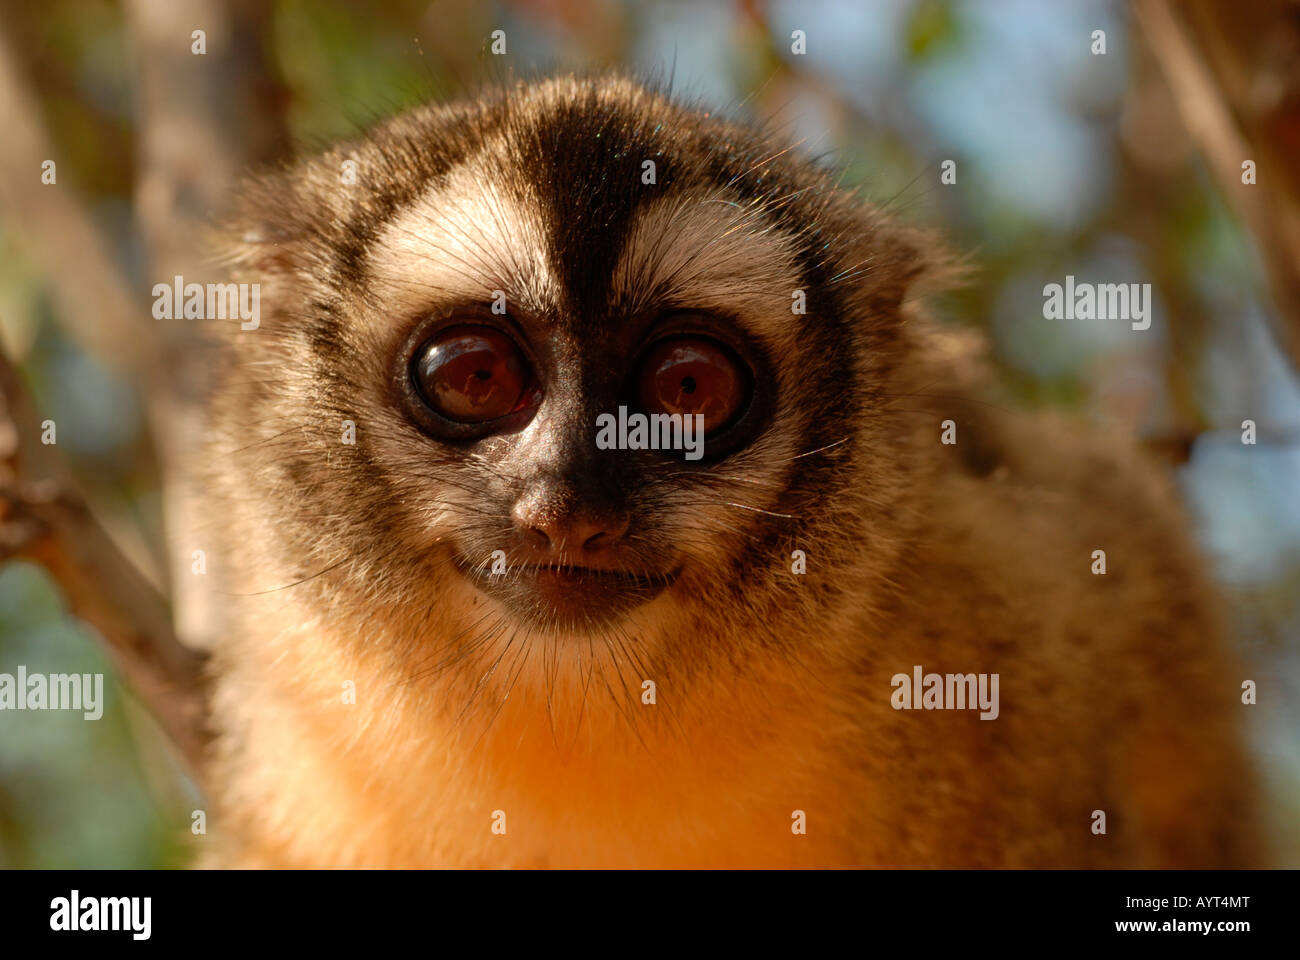 Mono nocturno fotografías e imágenes de - Alamy